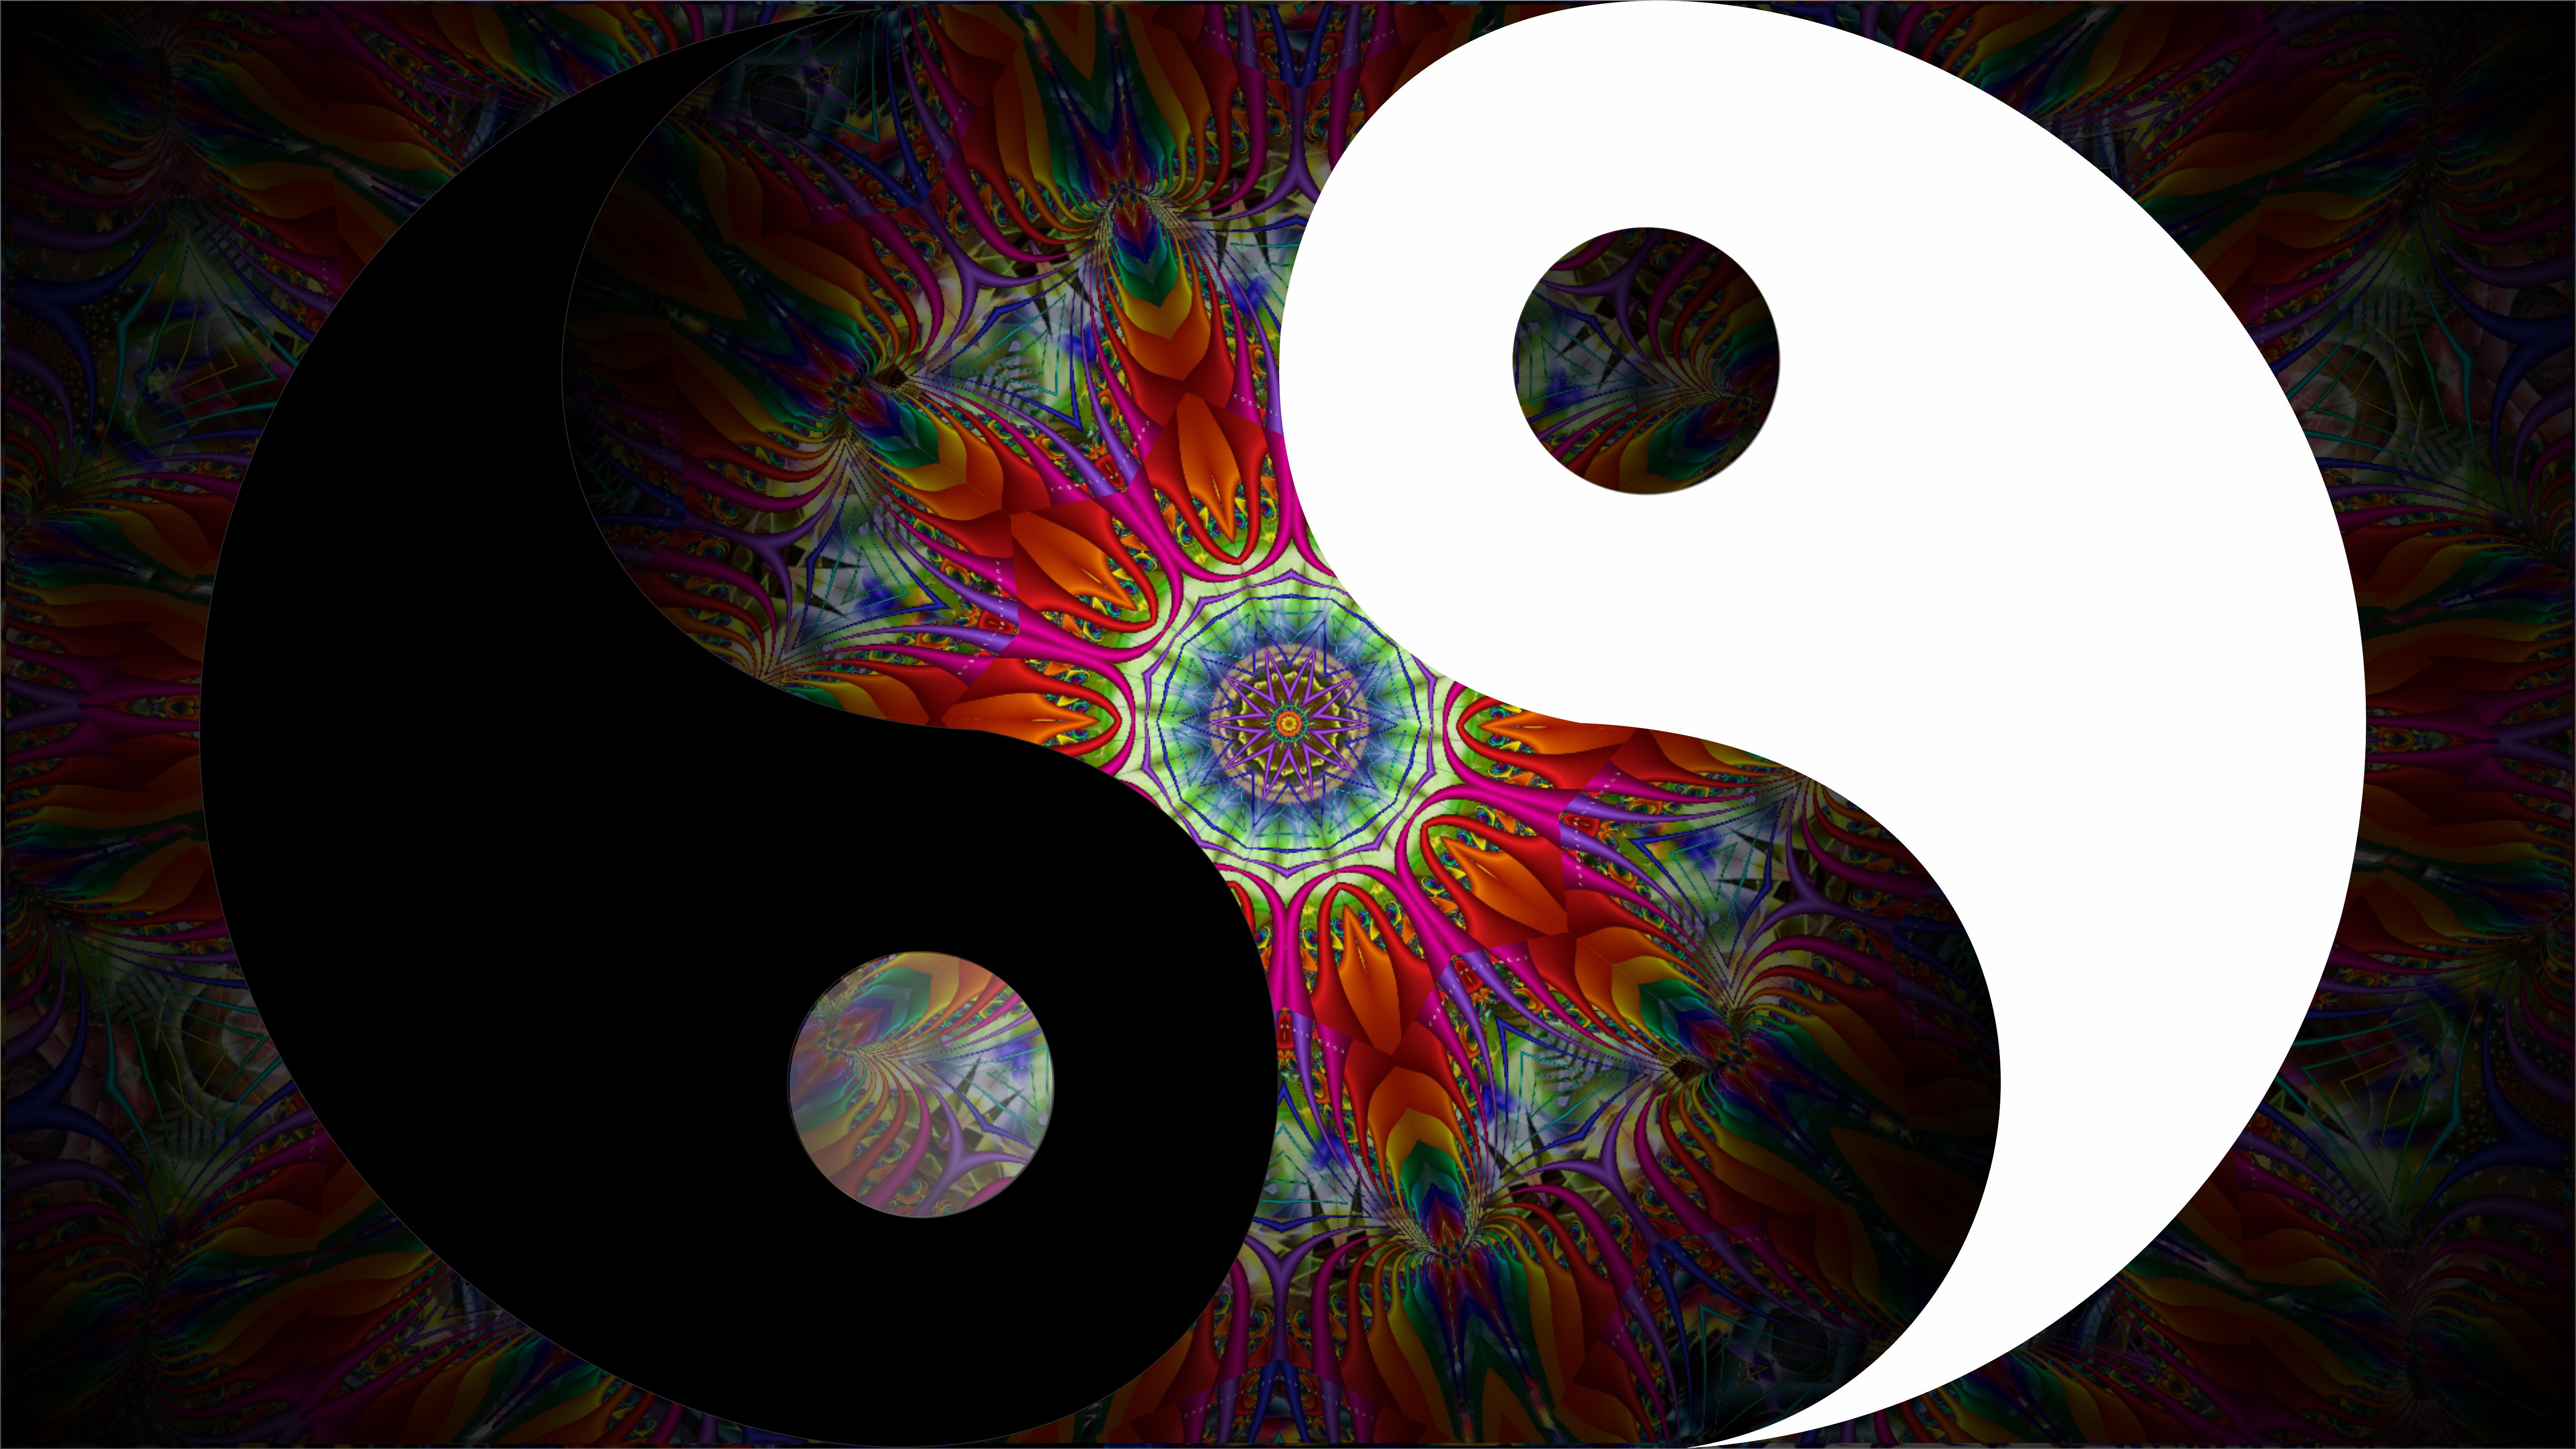 Yin & Yang Art by Dmitry Posudin